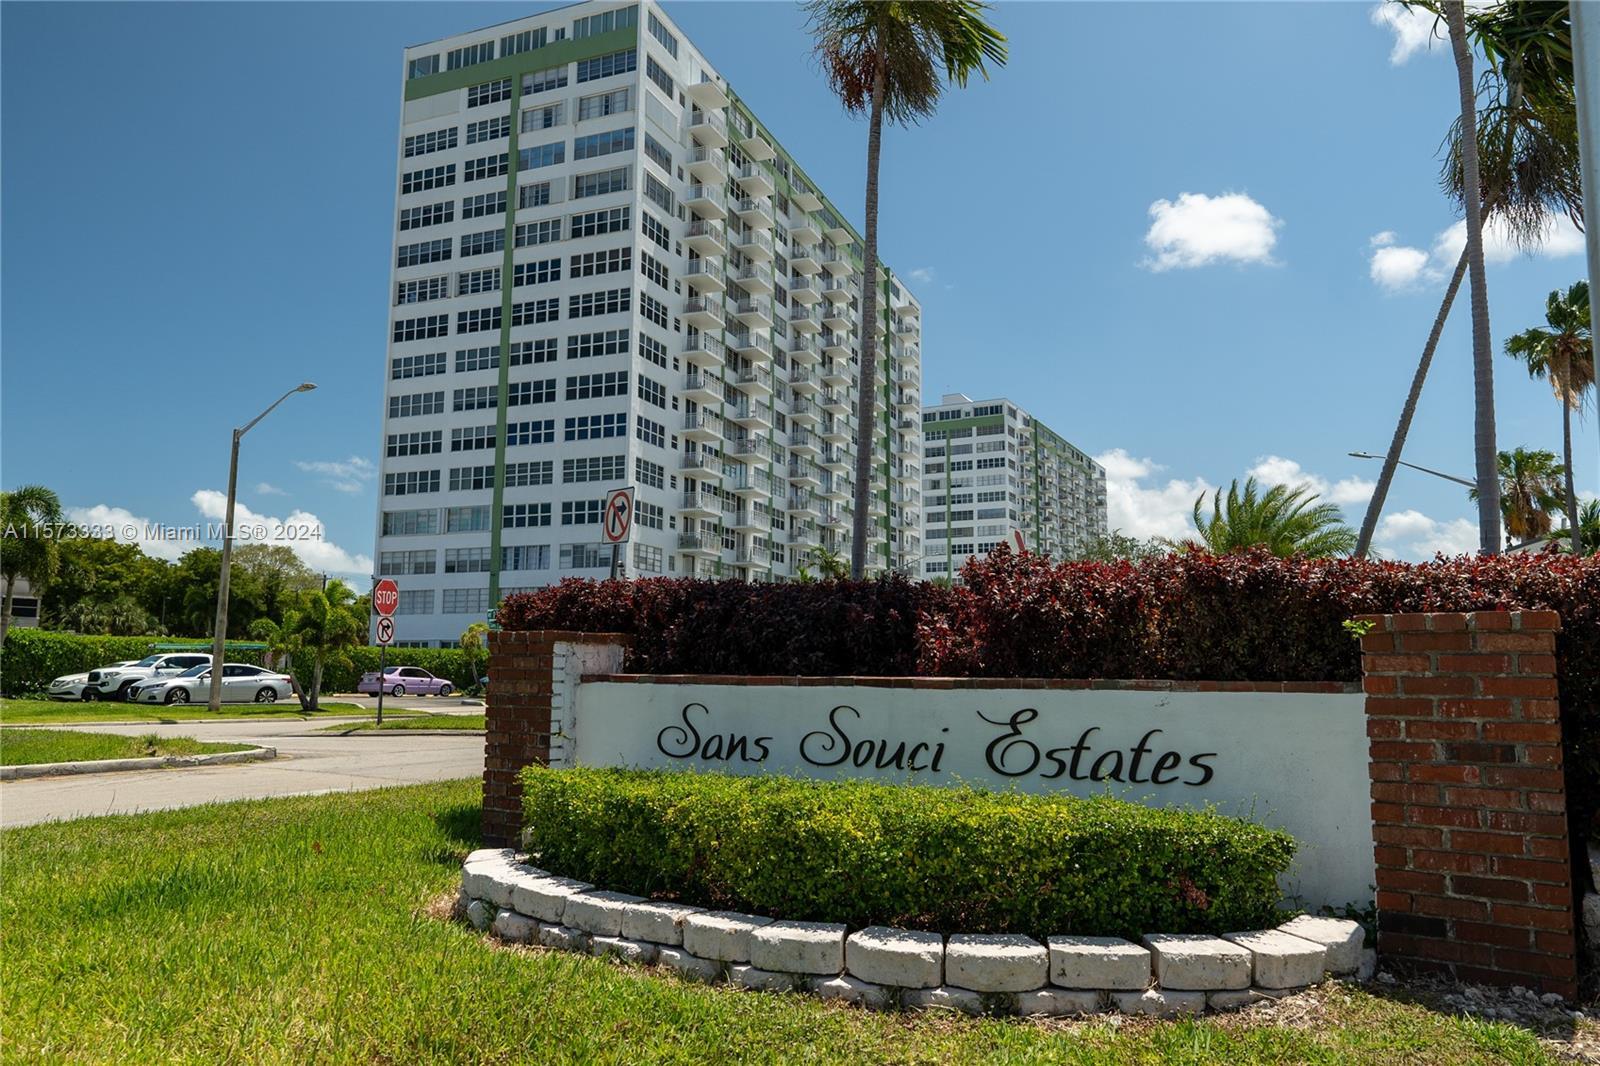 Photo of 2100 E Sans Souci Blvd #A703 in North Miami, FL